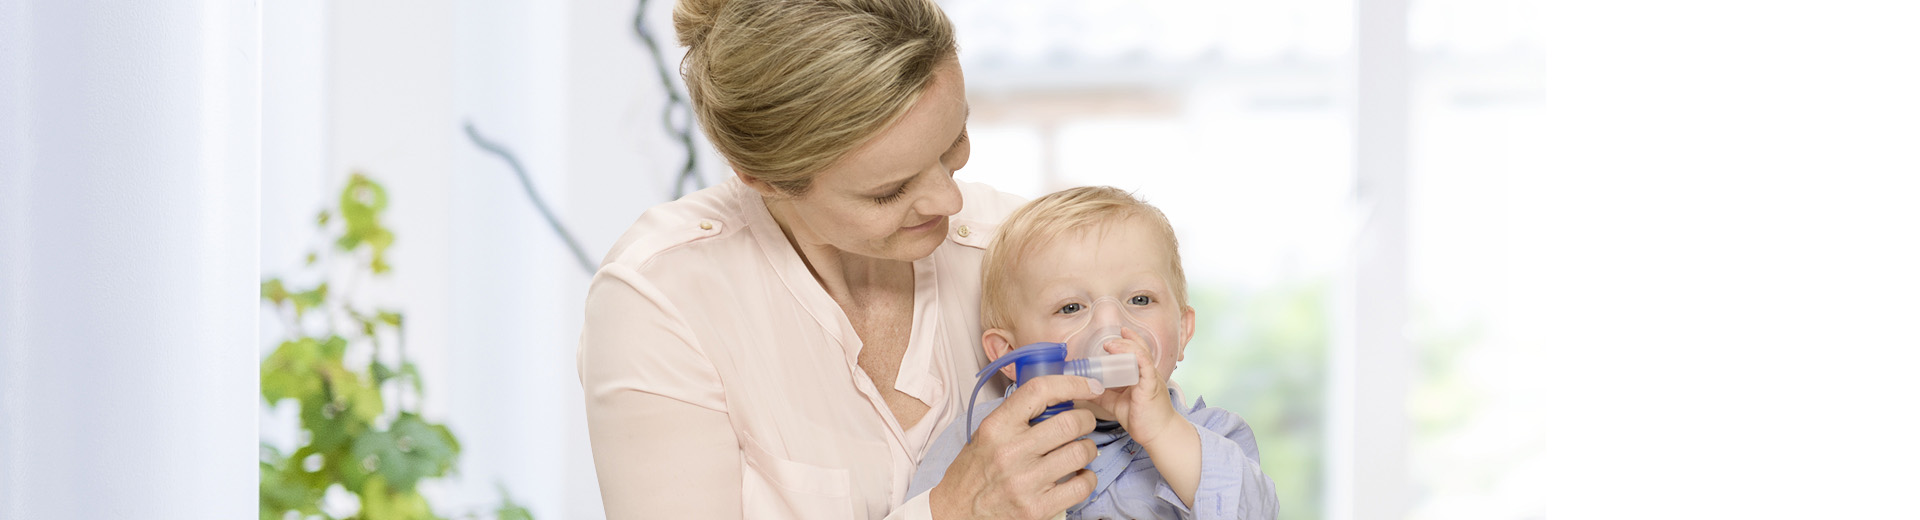 Richtig inhalieren – Inhalation bei Erkältung bereits bei Kindern